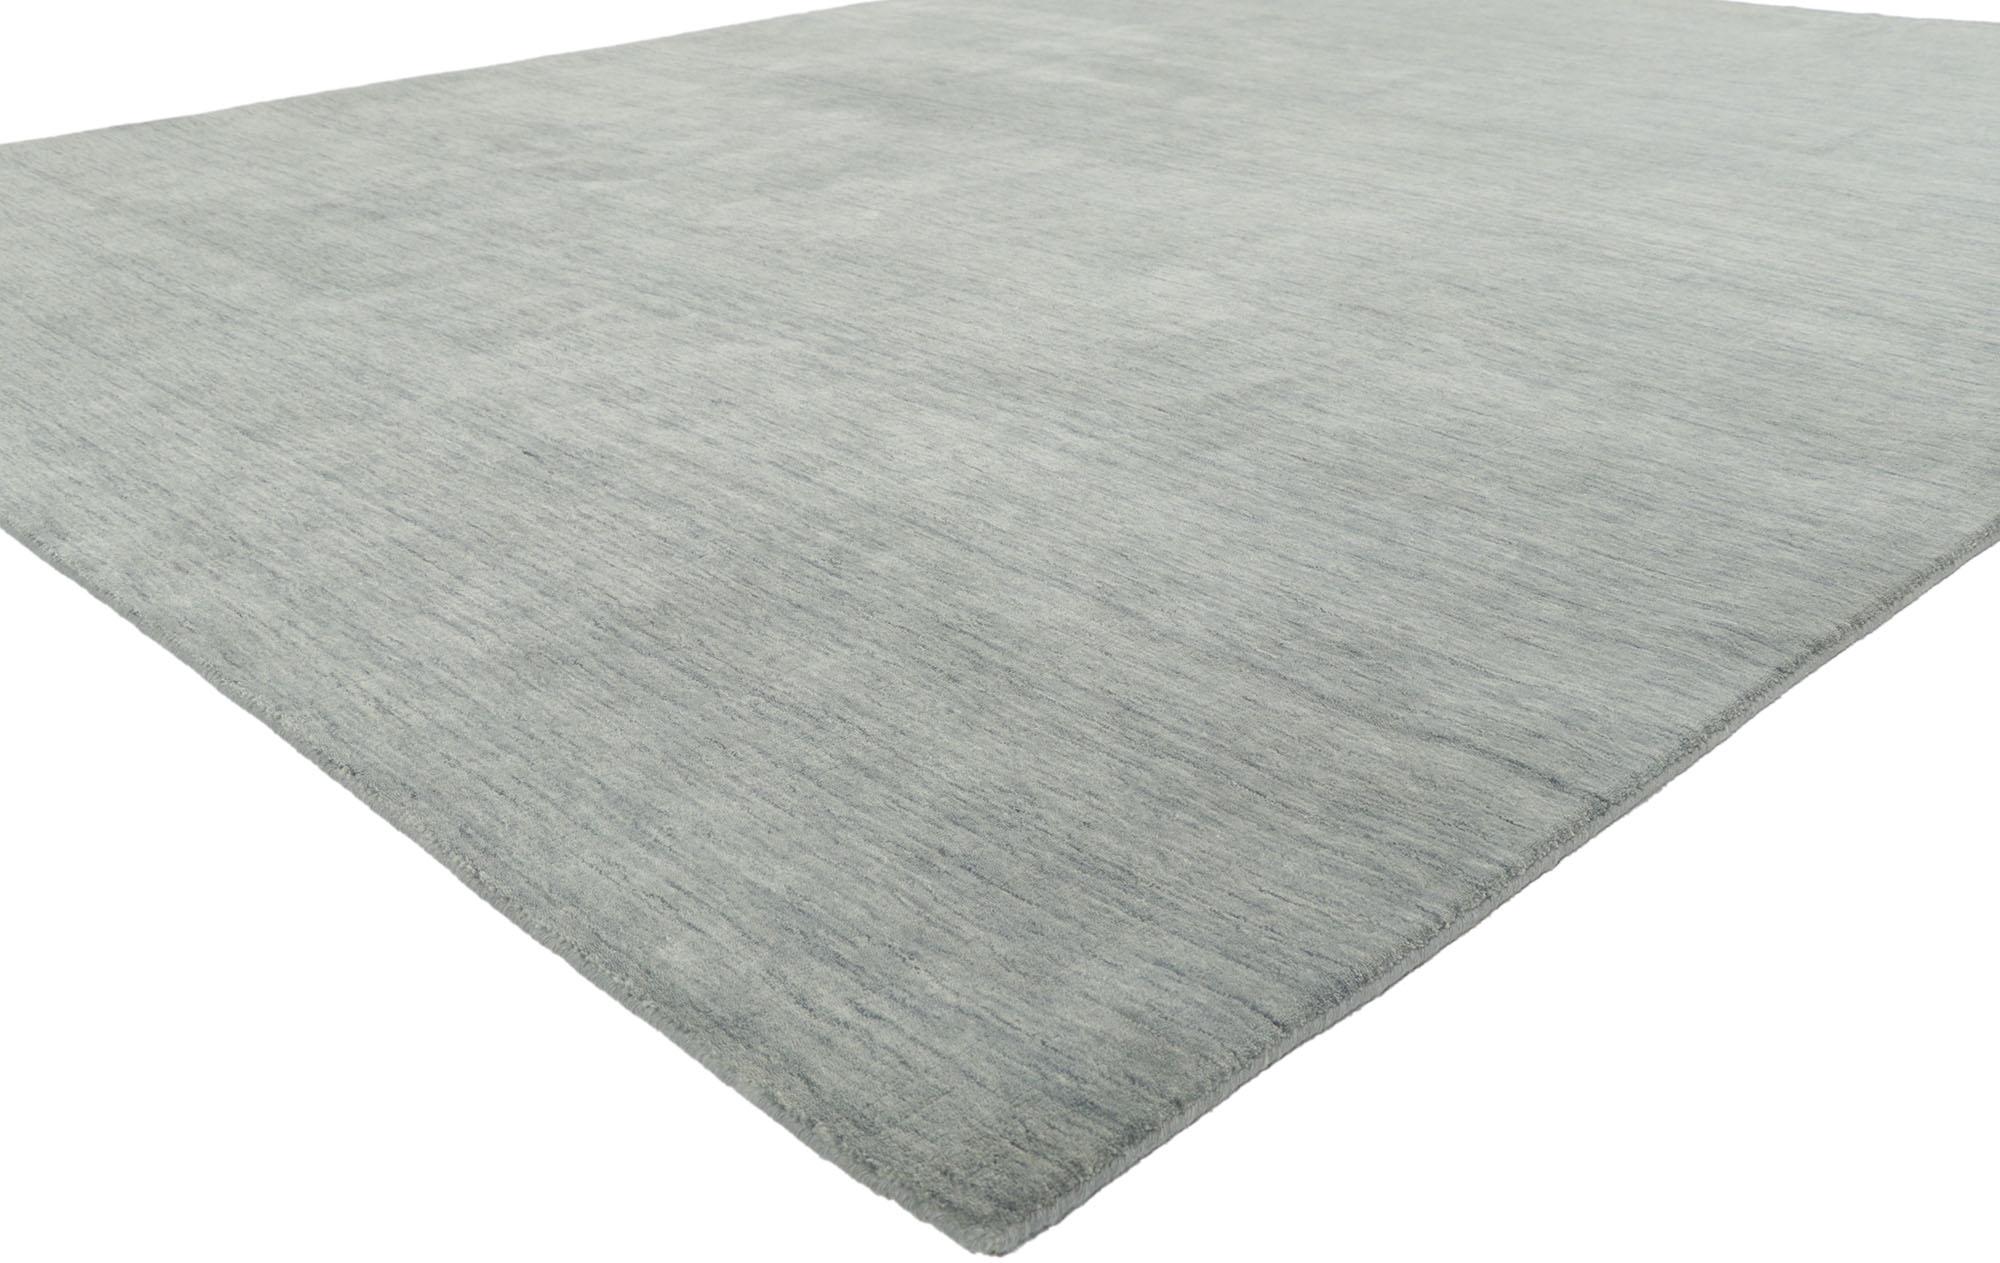 30737 New Contemporary Grey Area rug with Modern Style 08'03 x 10'01. D'une beauté sans effort, combinée à la simplicité et au style moderne, ce tapis indien contemporain en laine tissée à la main procure une sensation de confort douillet sans